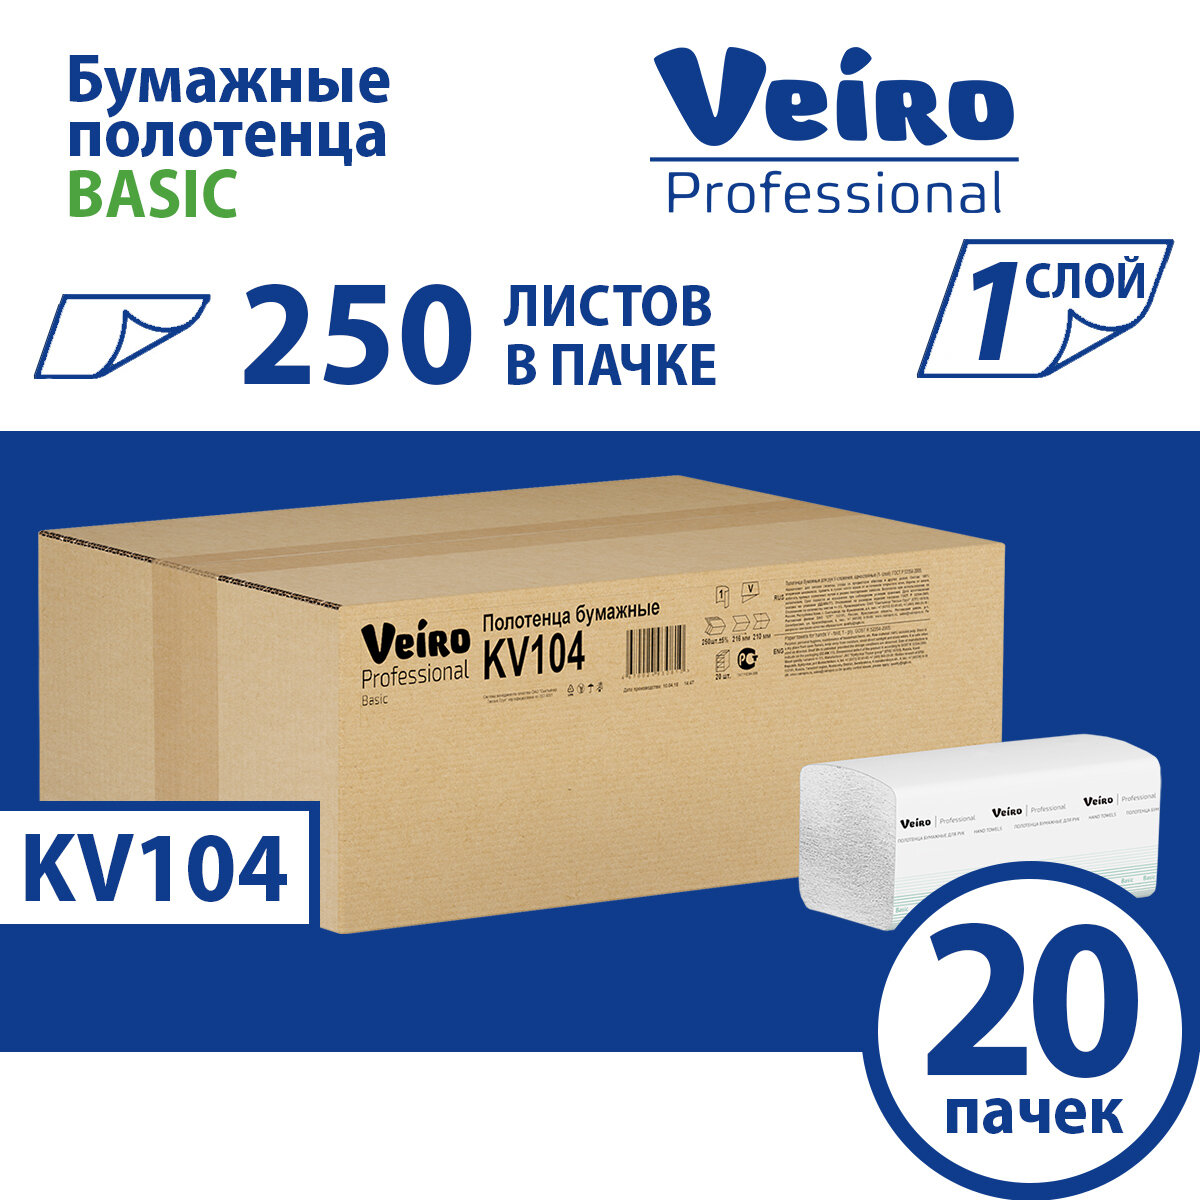 KV104 Бумажные полотенца в пачках Veiro Professional Basic цвет натуральный однослойные (20 пач х 250 л)